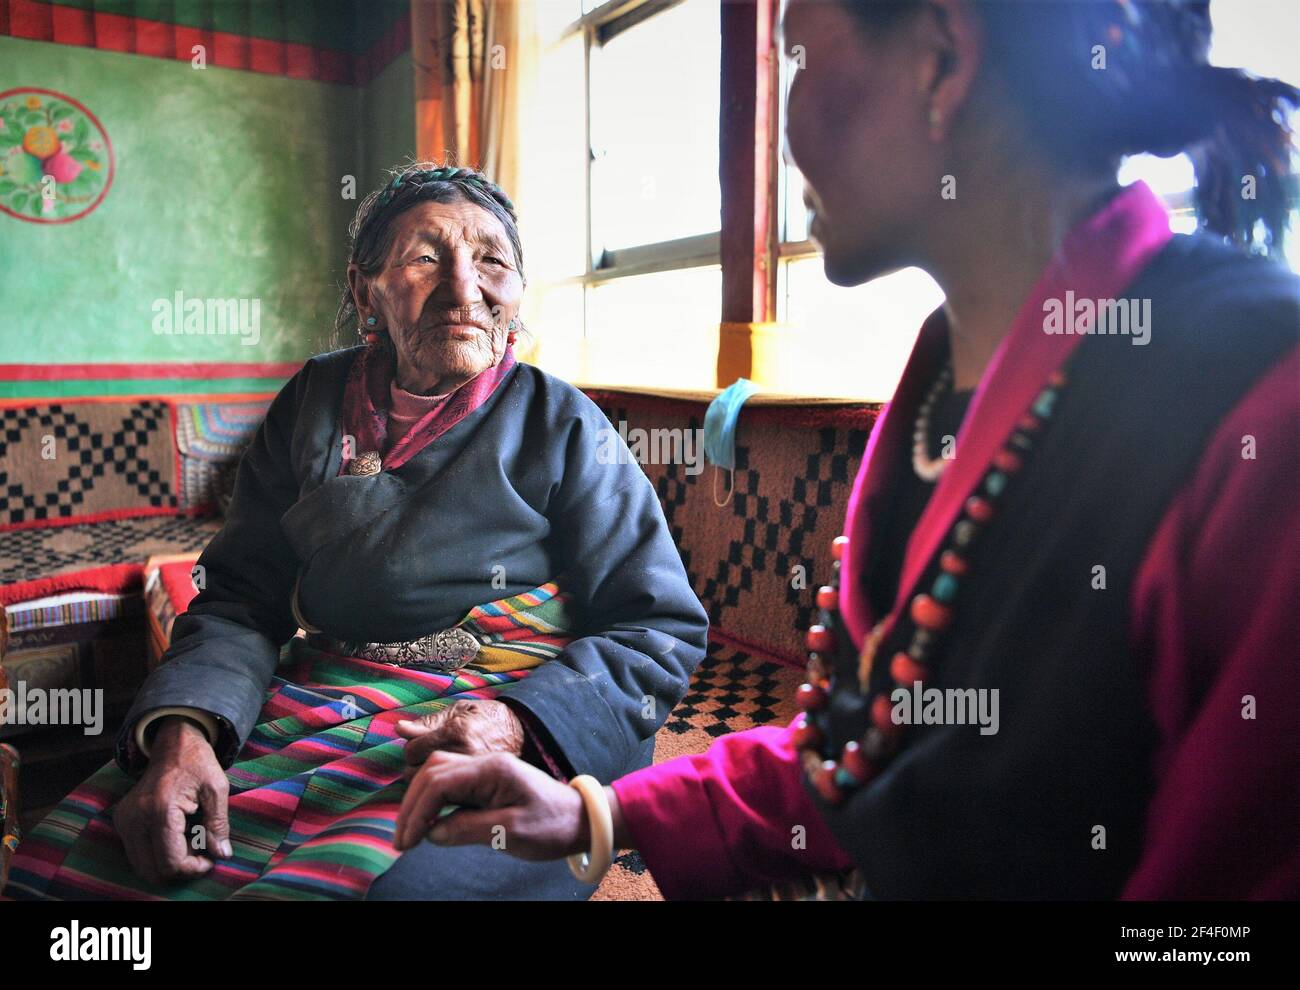 (210321) -- LHASA, 21. März 2021 (Xinhua) -- Basang (L) chattet mit ihrer Tochter in ihrem Haus im Ngamring Bezirk Xigaze, südwestlich von Chinas Autonomer Region Tibet, 27. Februar 2021. Basang, geboren 1936, pflegte Schafe für einen Leibeigenbesitzer zu weiden, um vor der demokratischen Reform 1959 um ein Leben zu betteln. Sie musste Wolle und Milch an den Leibeigenbesitzer als Steuer zahlen, und konnte nicht genug Nahrung und Kleidung haben. "Der Winter war die schwierigste Jahreszeit. Es waren acht Leute in meiner Familie, aber wir hatten kein Paar Schuhe." "Schafe weiden und barfuß auf der Farm arbeiten, ich beneide Tiere mit Hufen wirklich." Basa Stockfoto